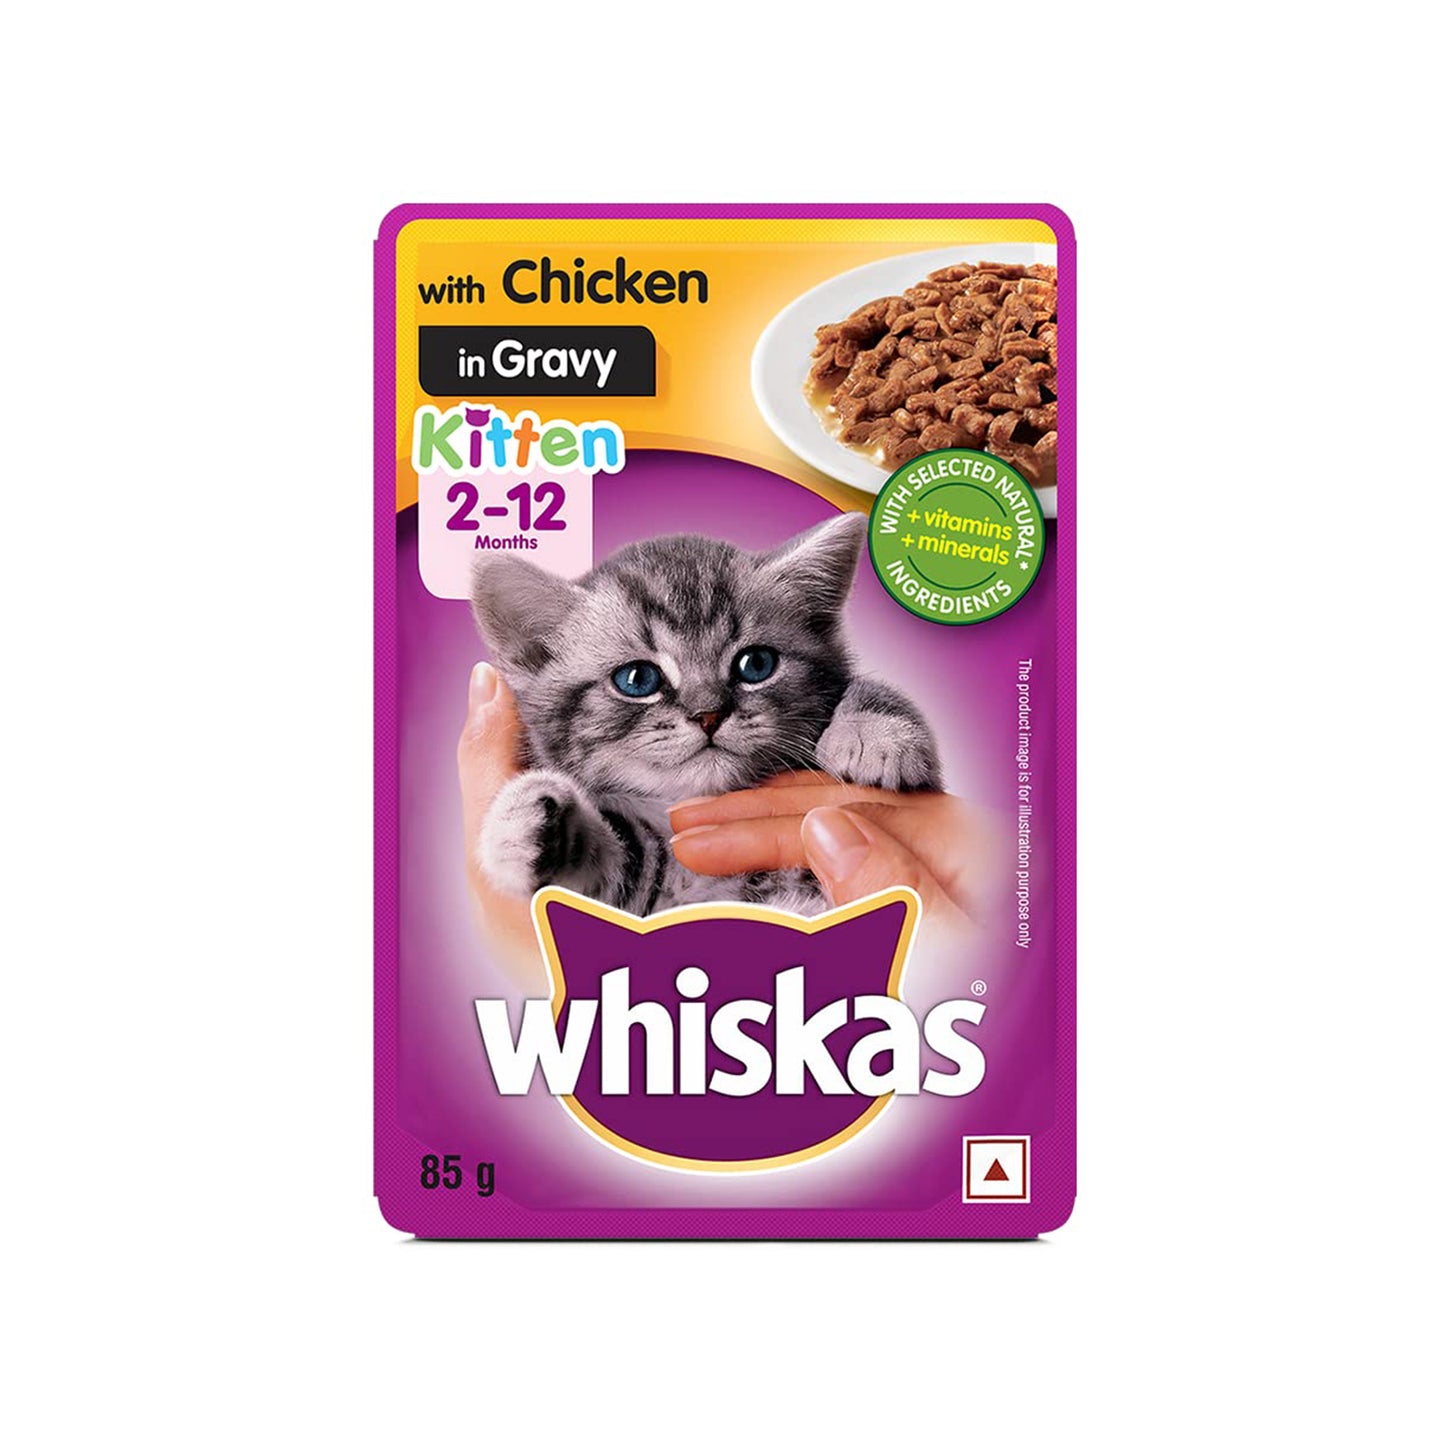 Whiskas - Wet Food For Kittens (2-12 Months) | Chicken in Gravy